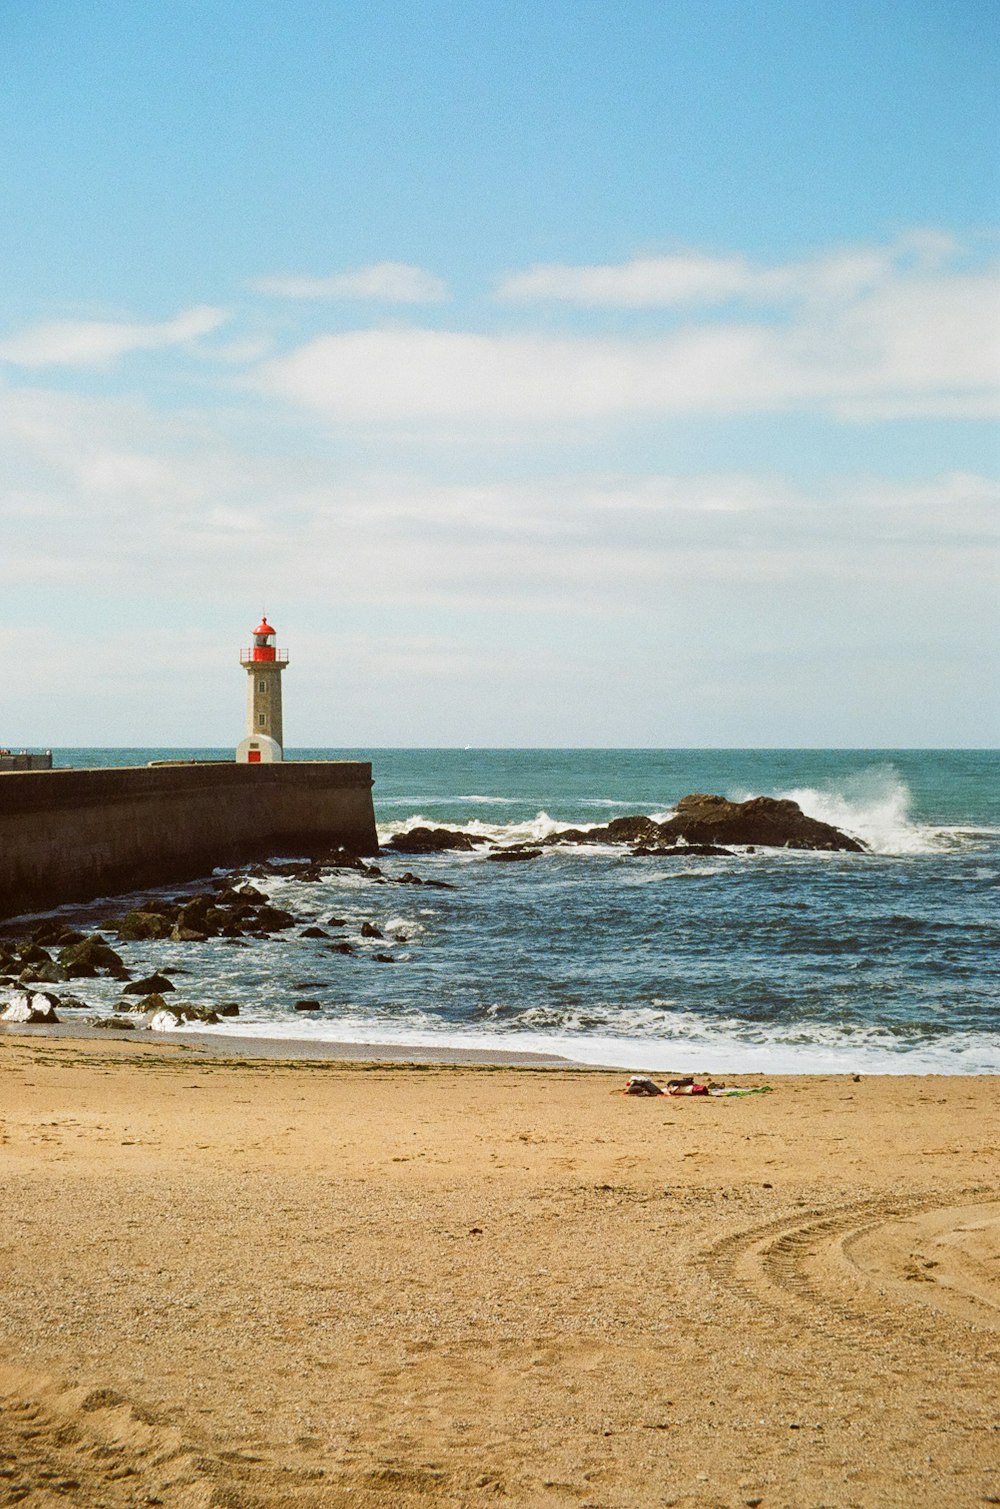 a lighthouse on a rocky beach